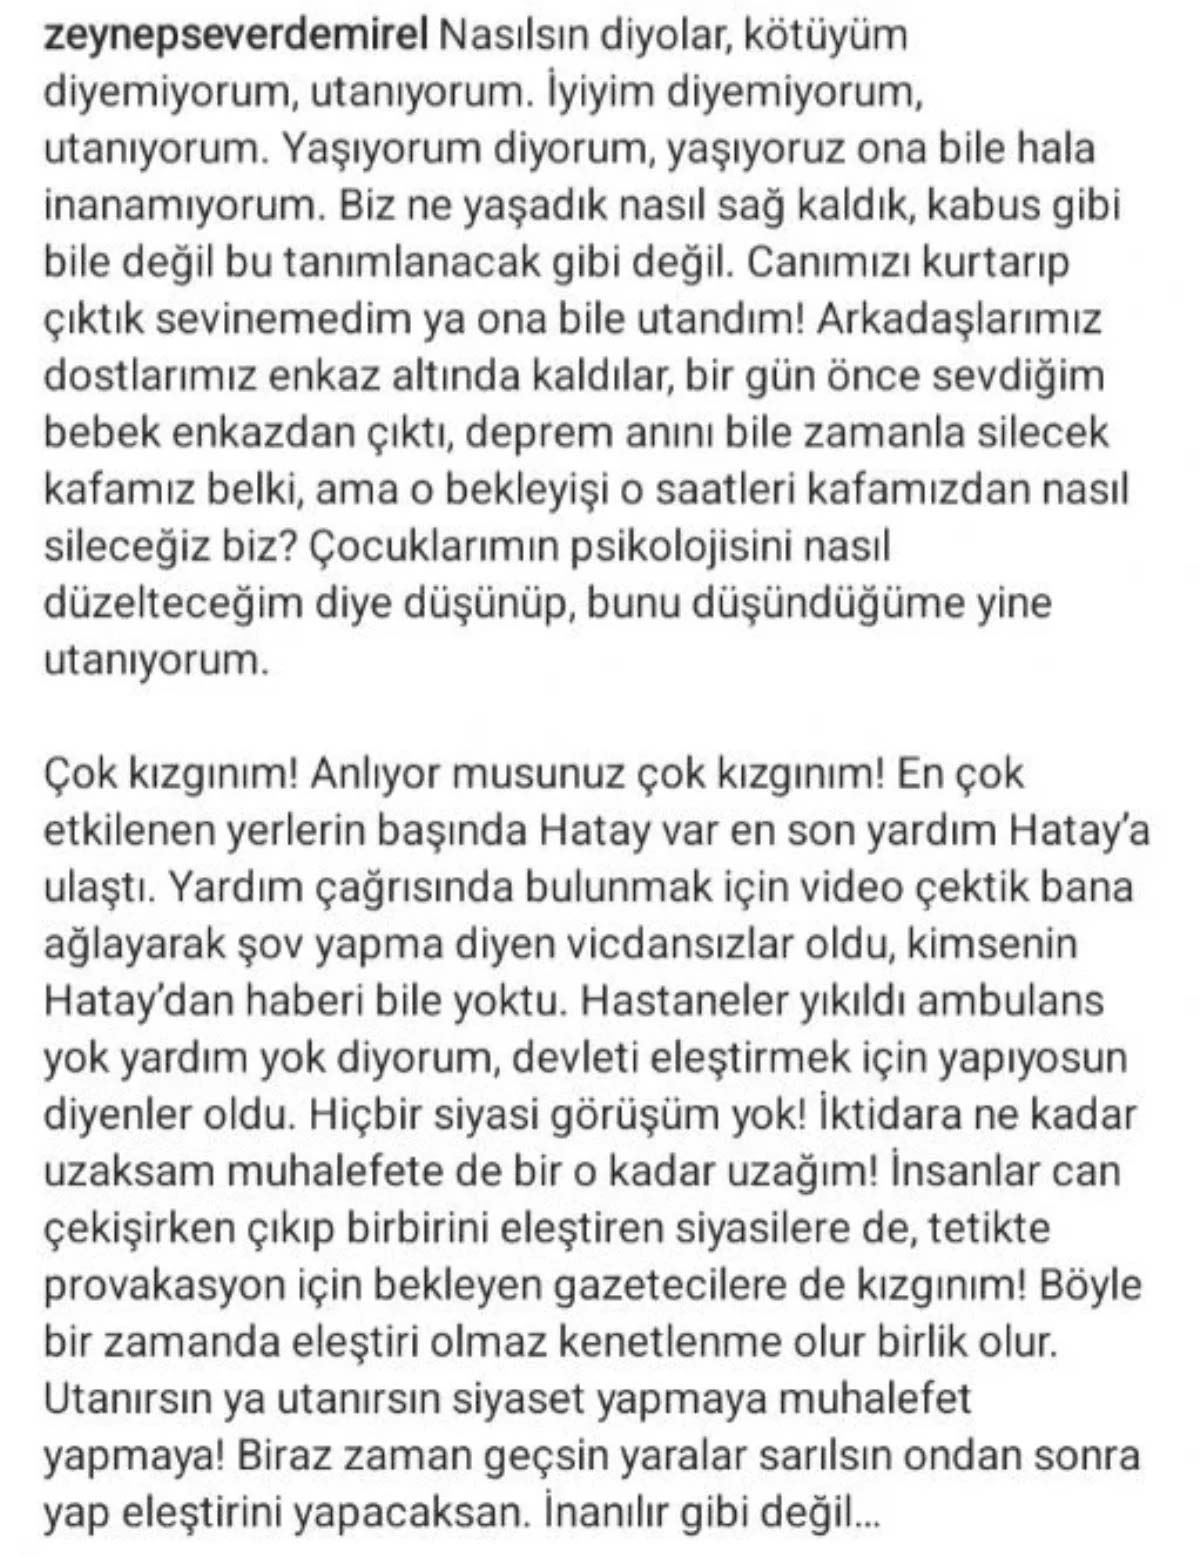 Volkan Demirel'in eşi Zeynep Sever'in isyanı: 'Bir gün önce sevdiğim bebek enkazdan çıktı...'